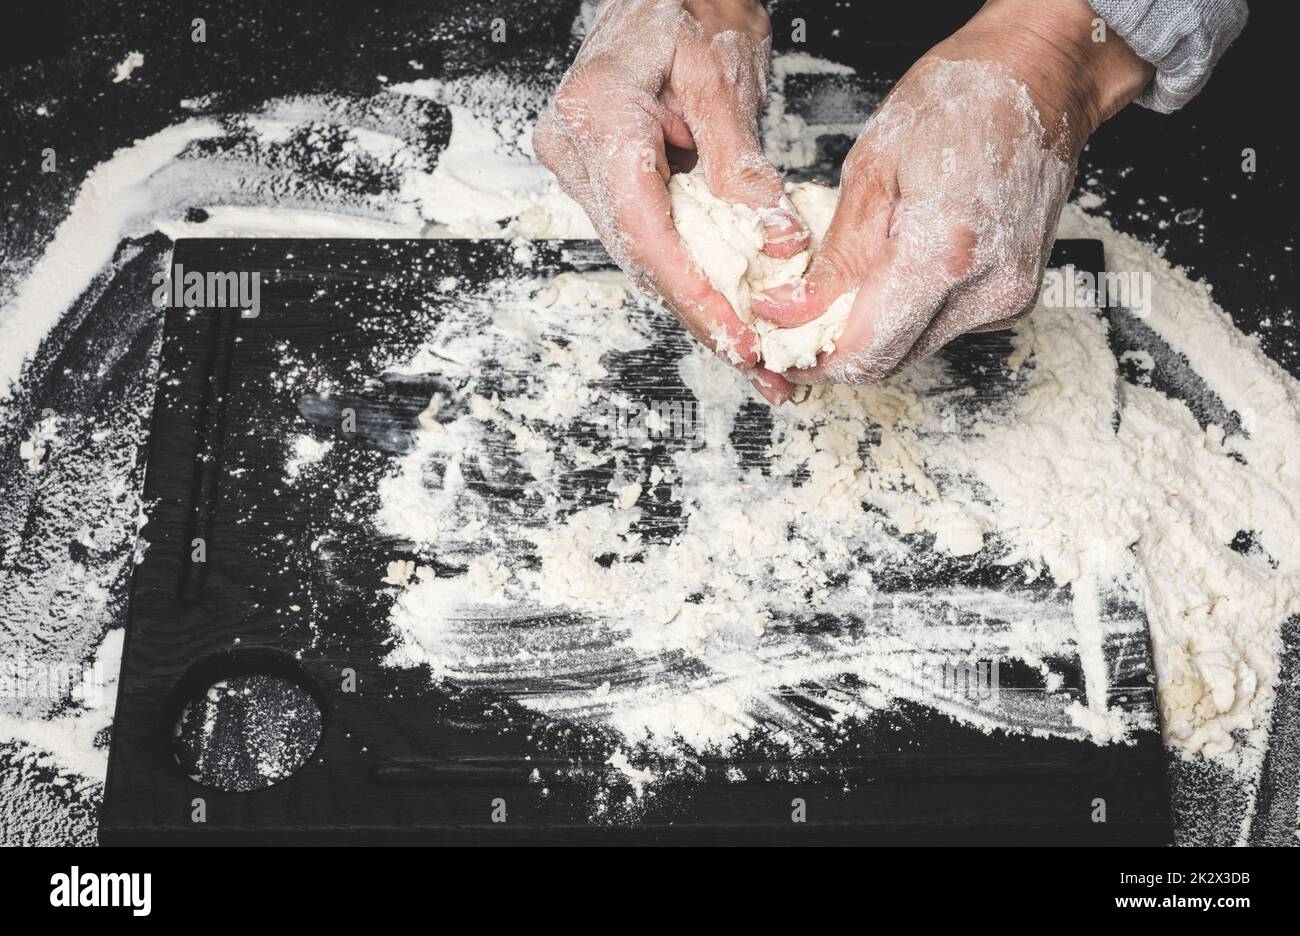 deux mains de femmes pétrient la pâte de farine de blé blanc sur une table noire, vue de dessus Banque D'Images